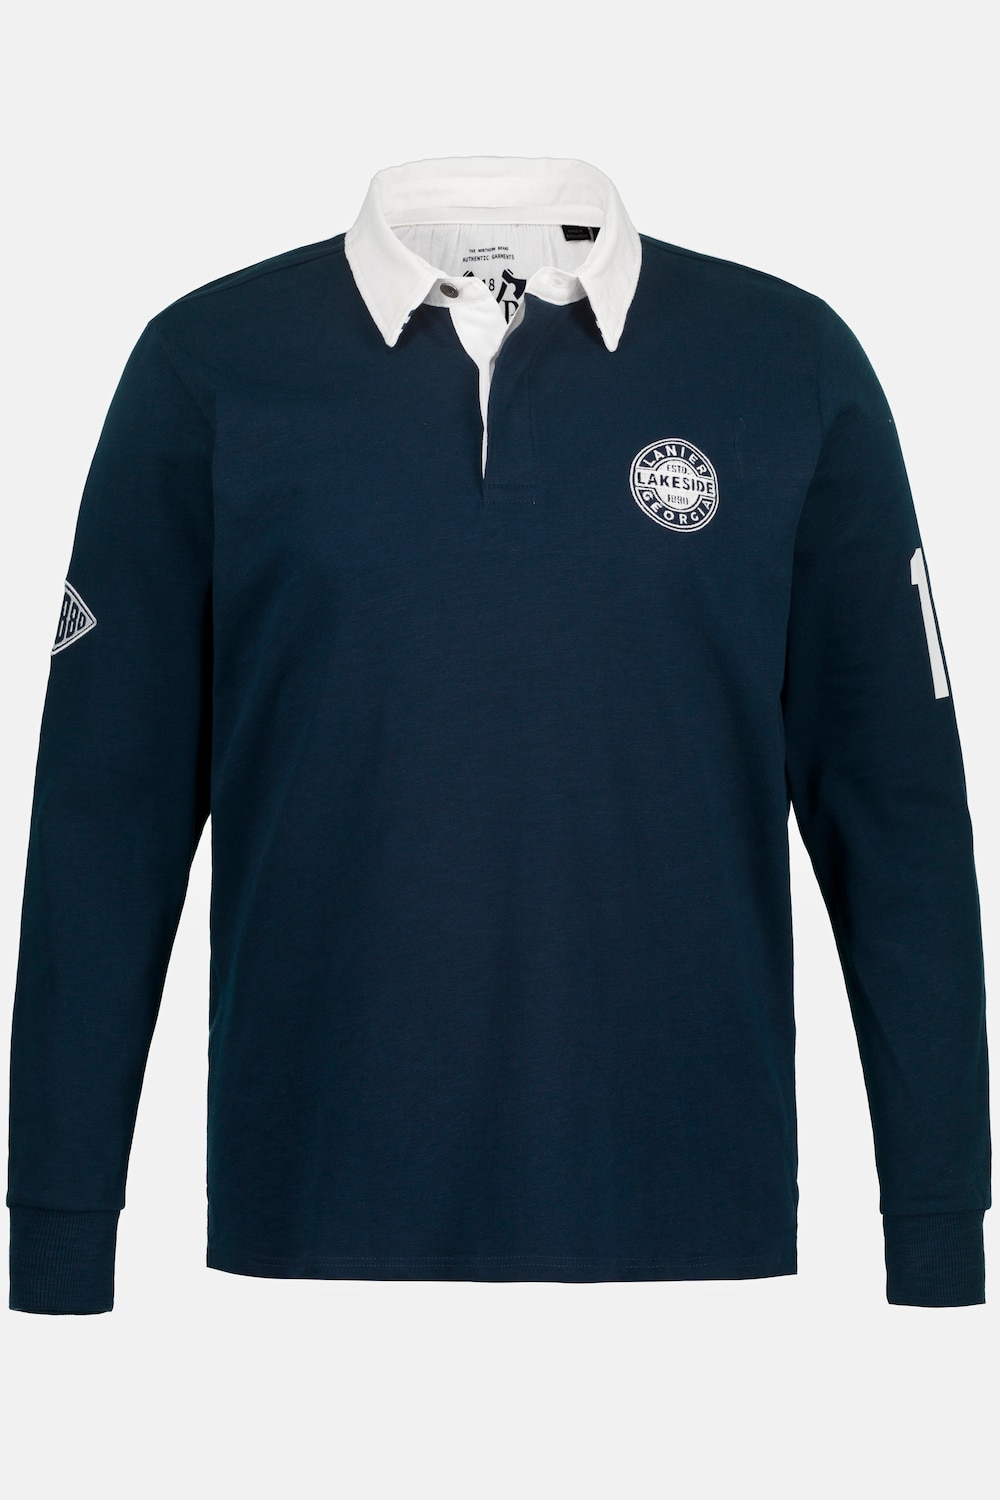 Rugby-Sweater, Große Größen, Herren, blau, Größe: XL, Baumwolle, JP1880 product